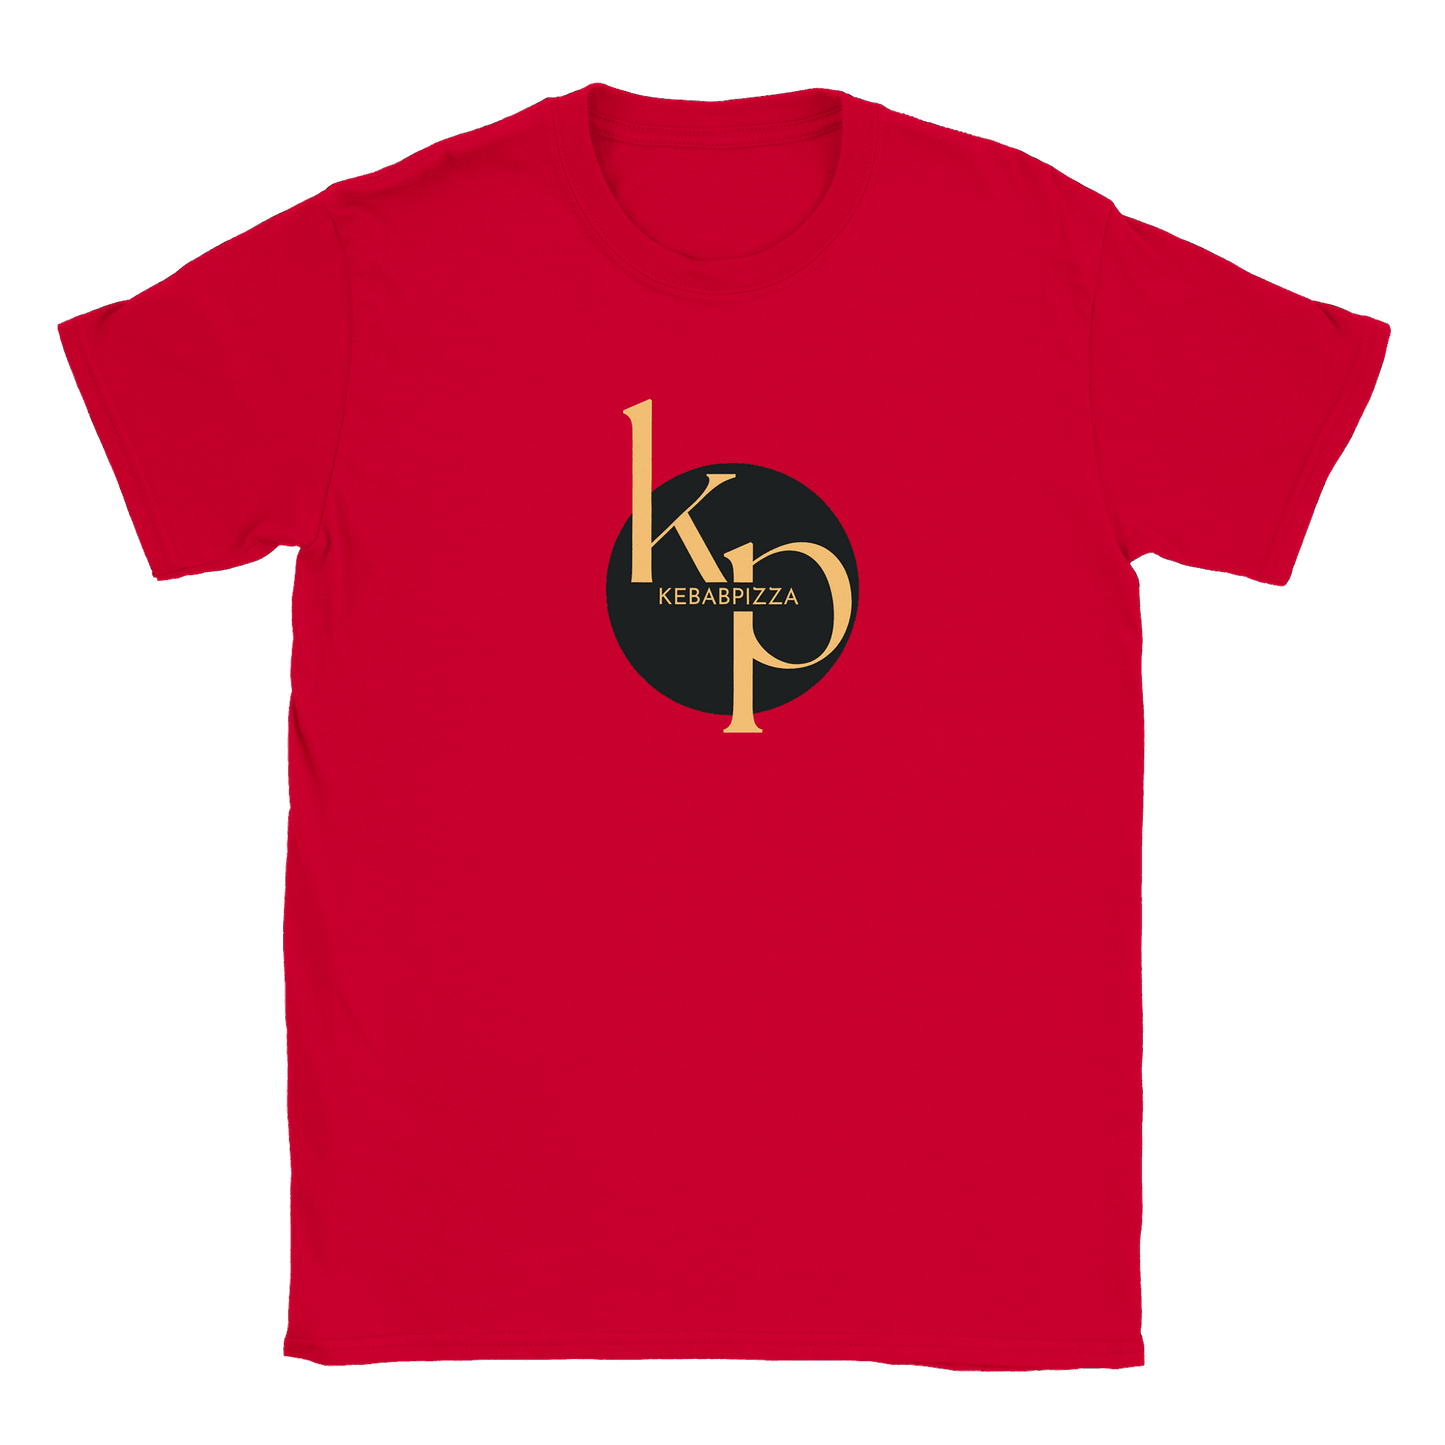 Kebabpizza - T-shirt Röd